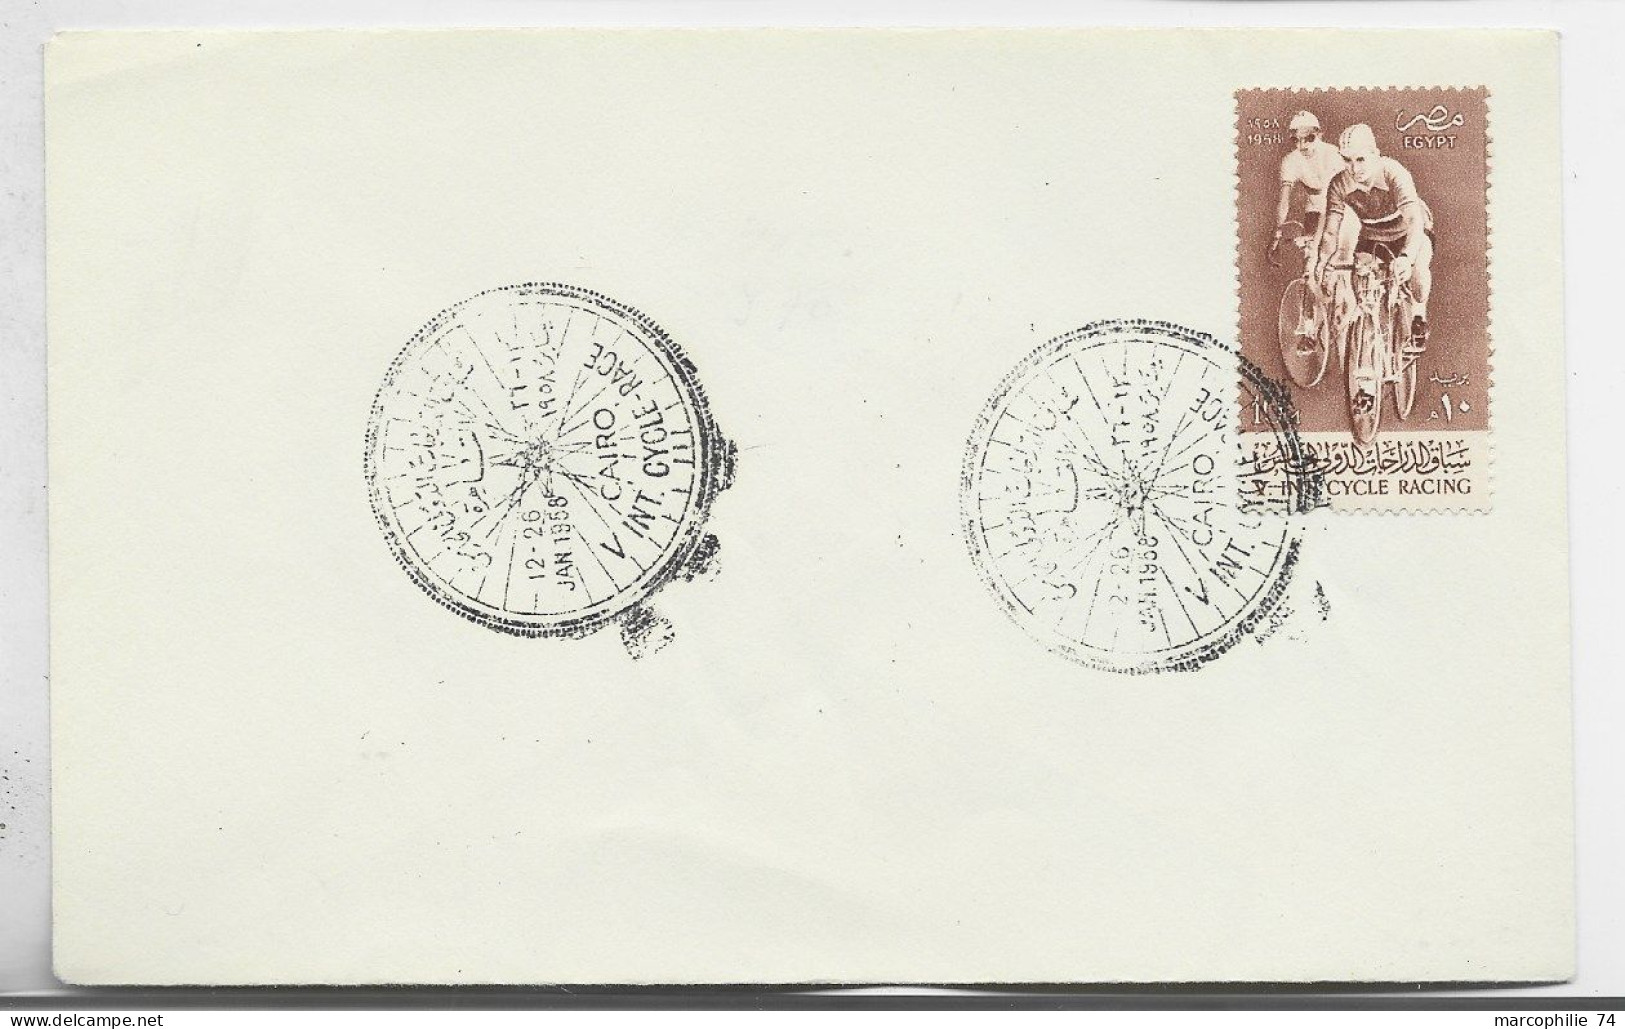 UAR 10M LETTRE COVER  VINT CYCLE RACE CAIRO 1958 VELO - Lettres & Documents